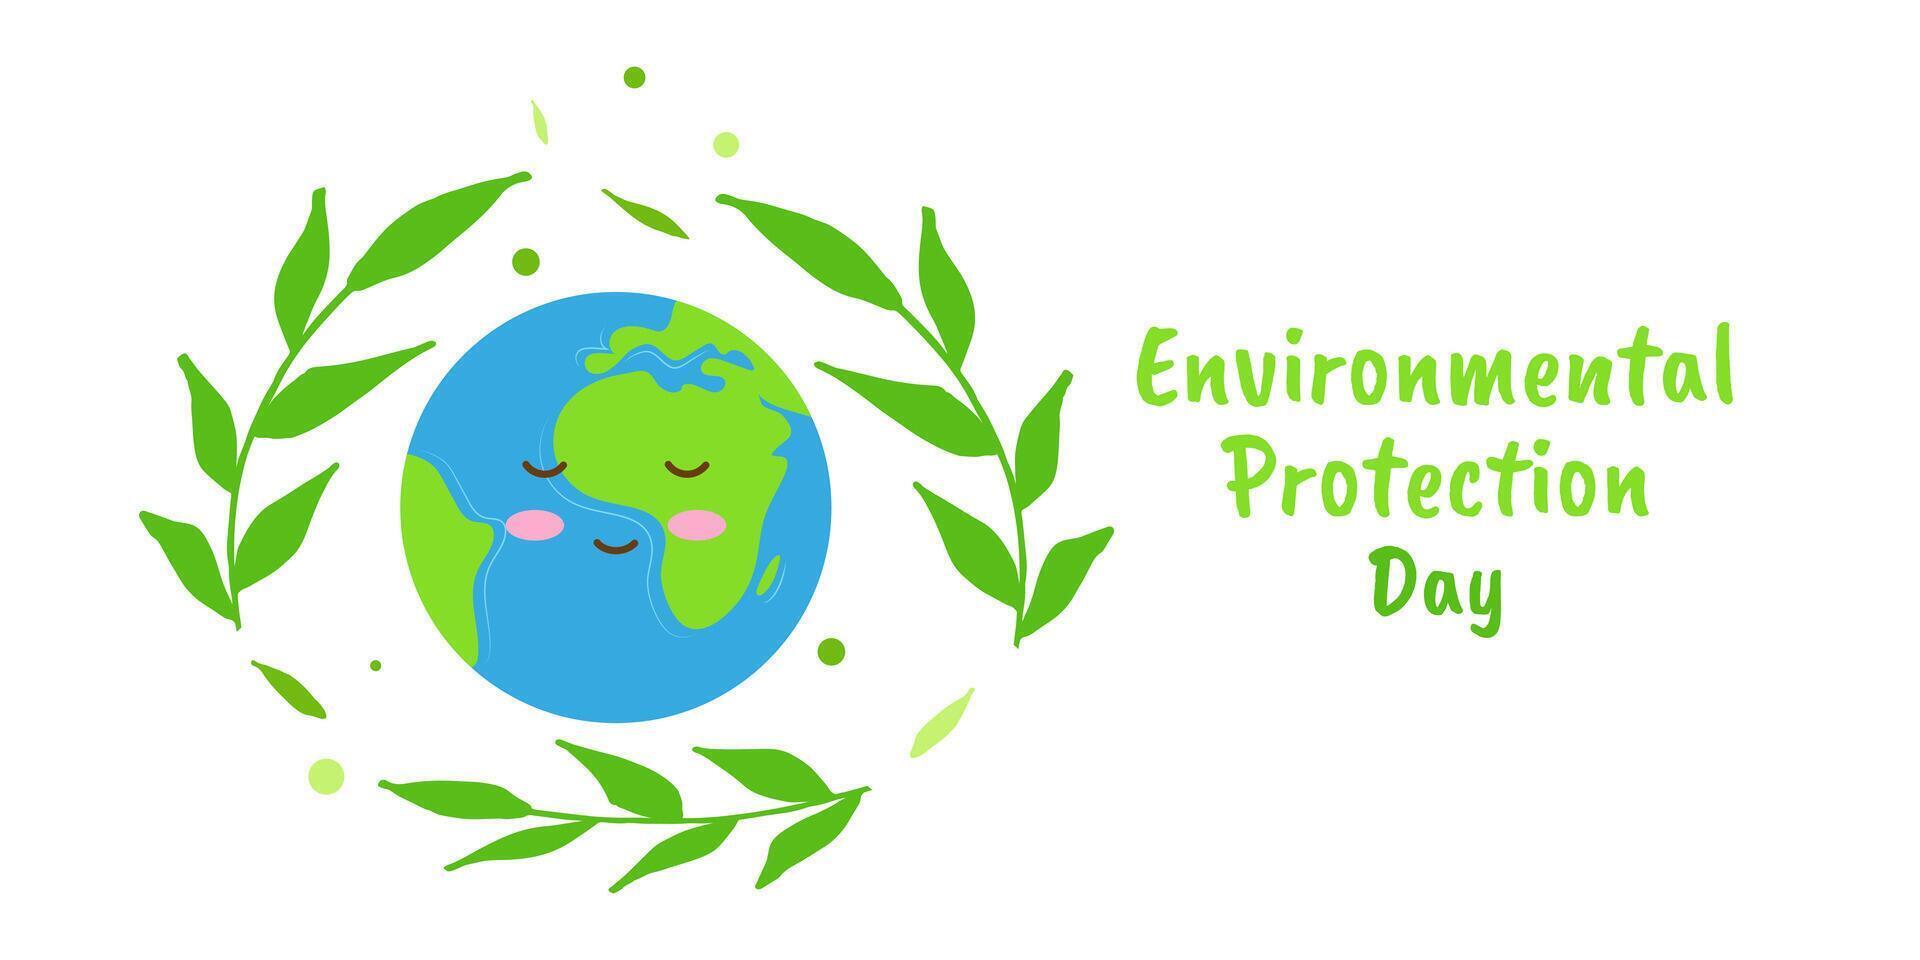 ambientale protezione giorno Salva il pianeta terra vettore